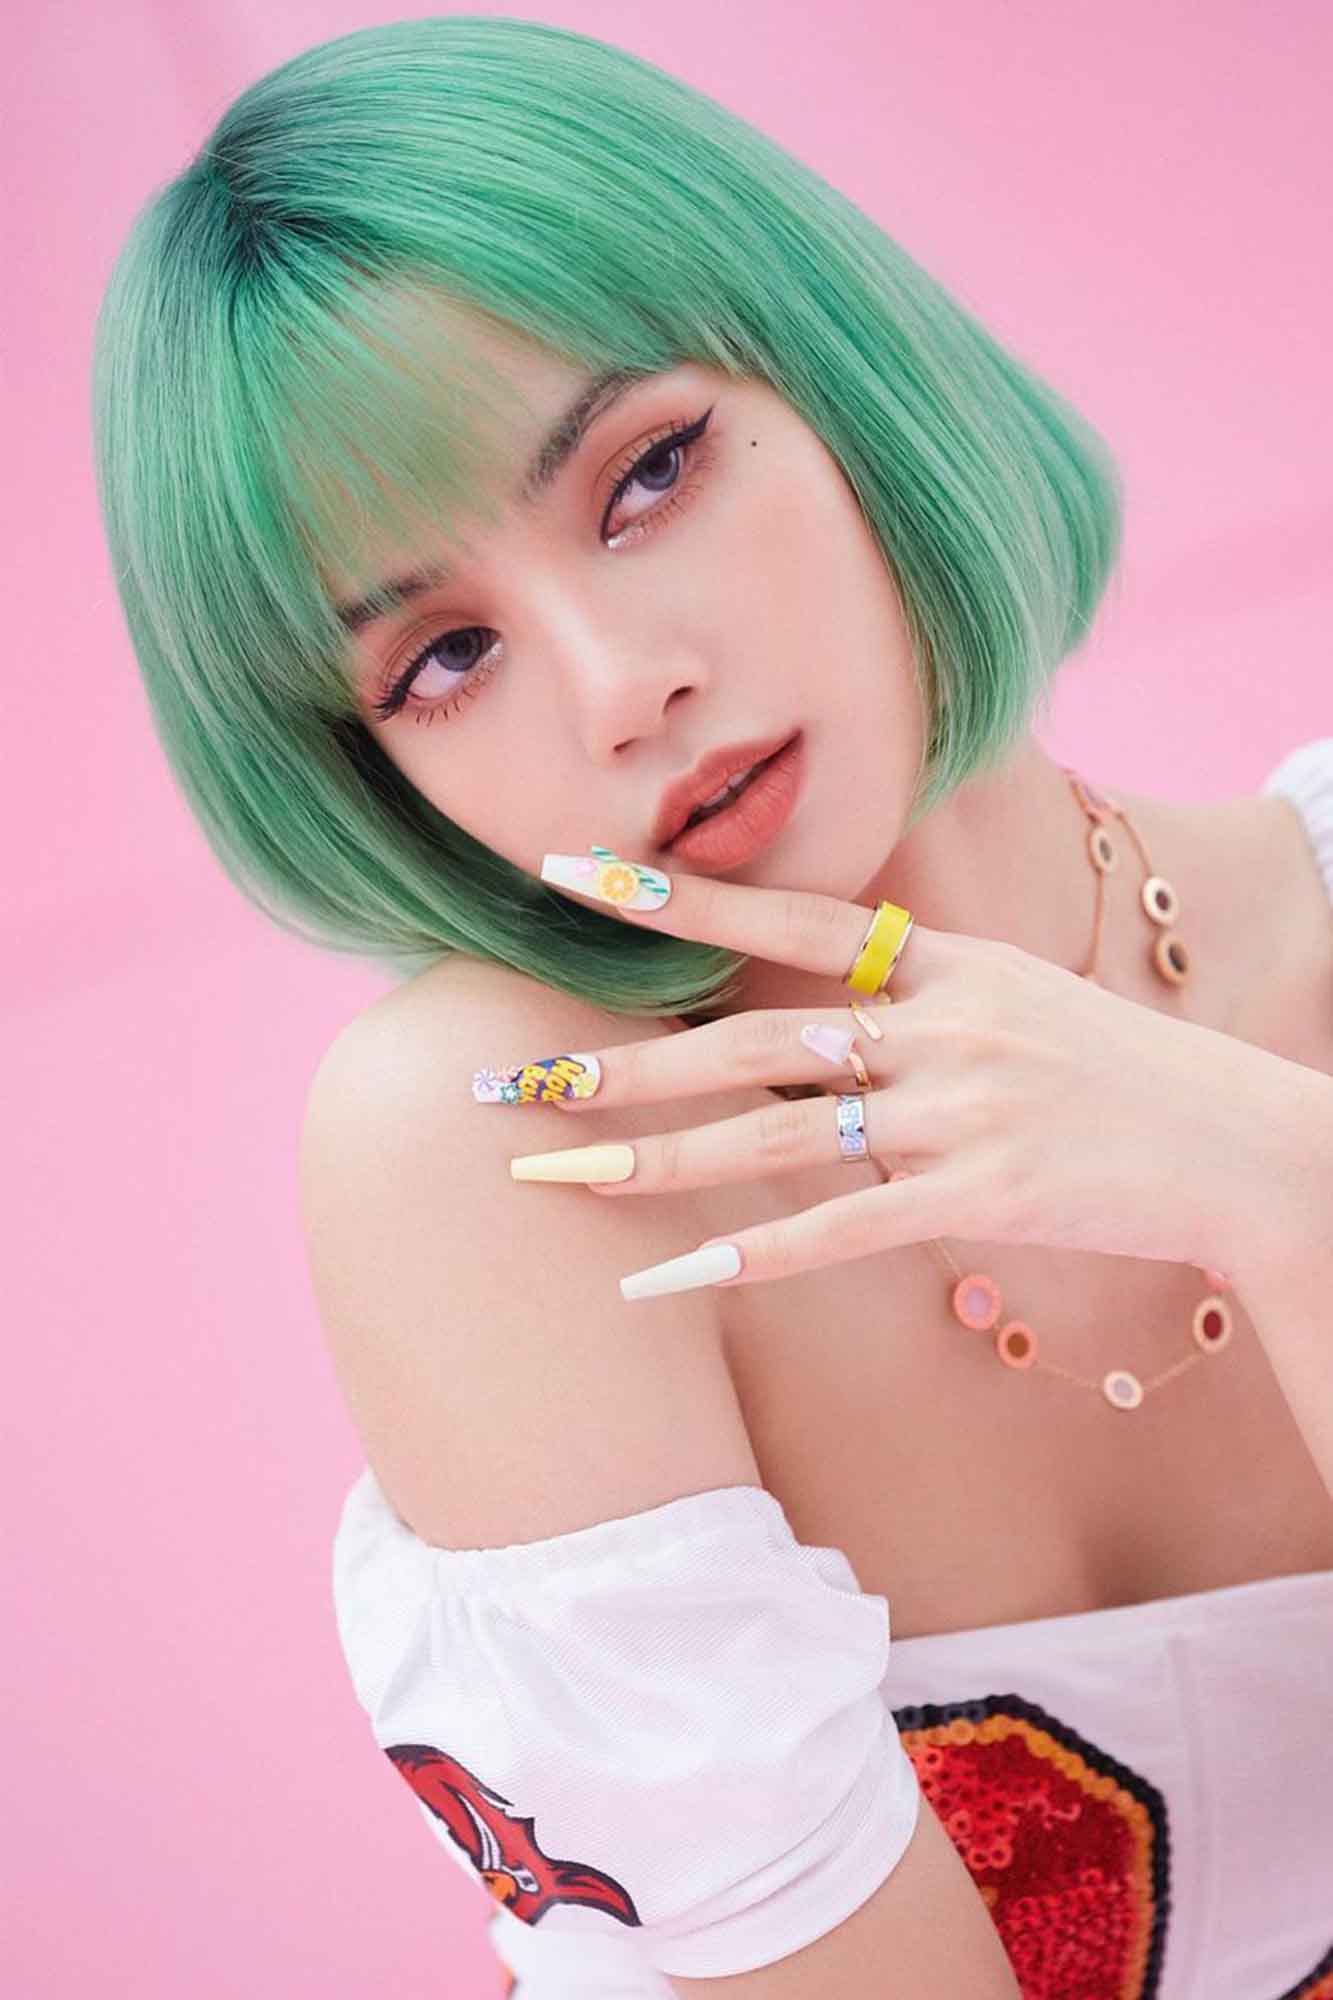 kpop idol wanita lisa blackpink dengan rambut pendek berwarna hijau